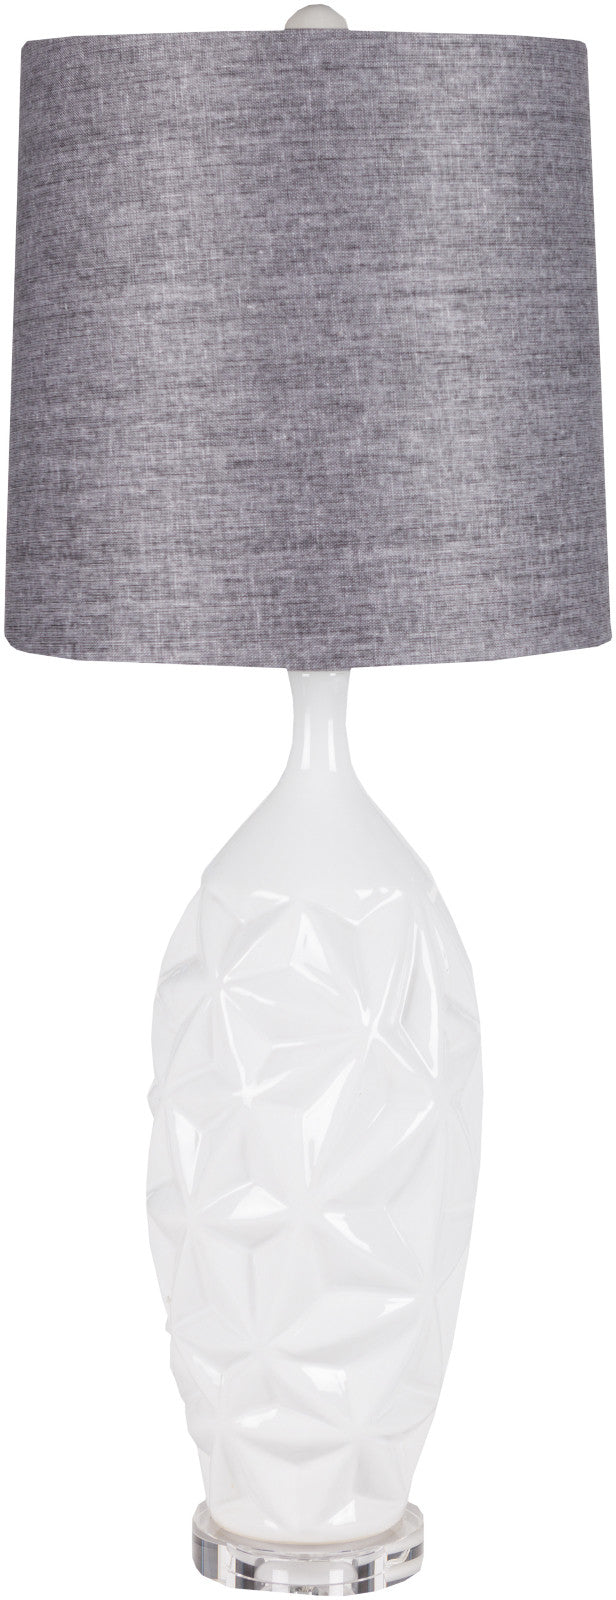 Surya Ceramic LMP-1058 Charcoal Lamp Table Lamp